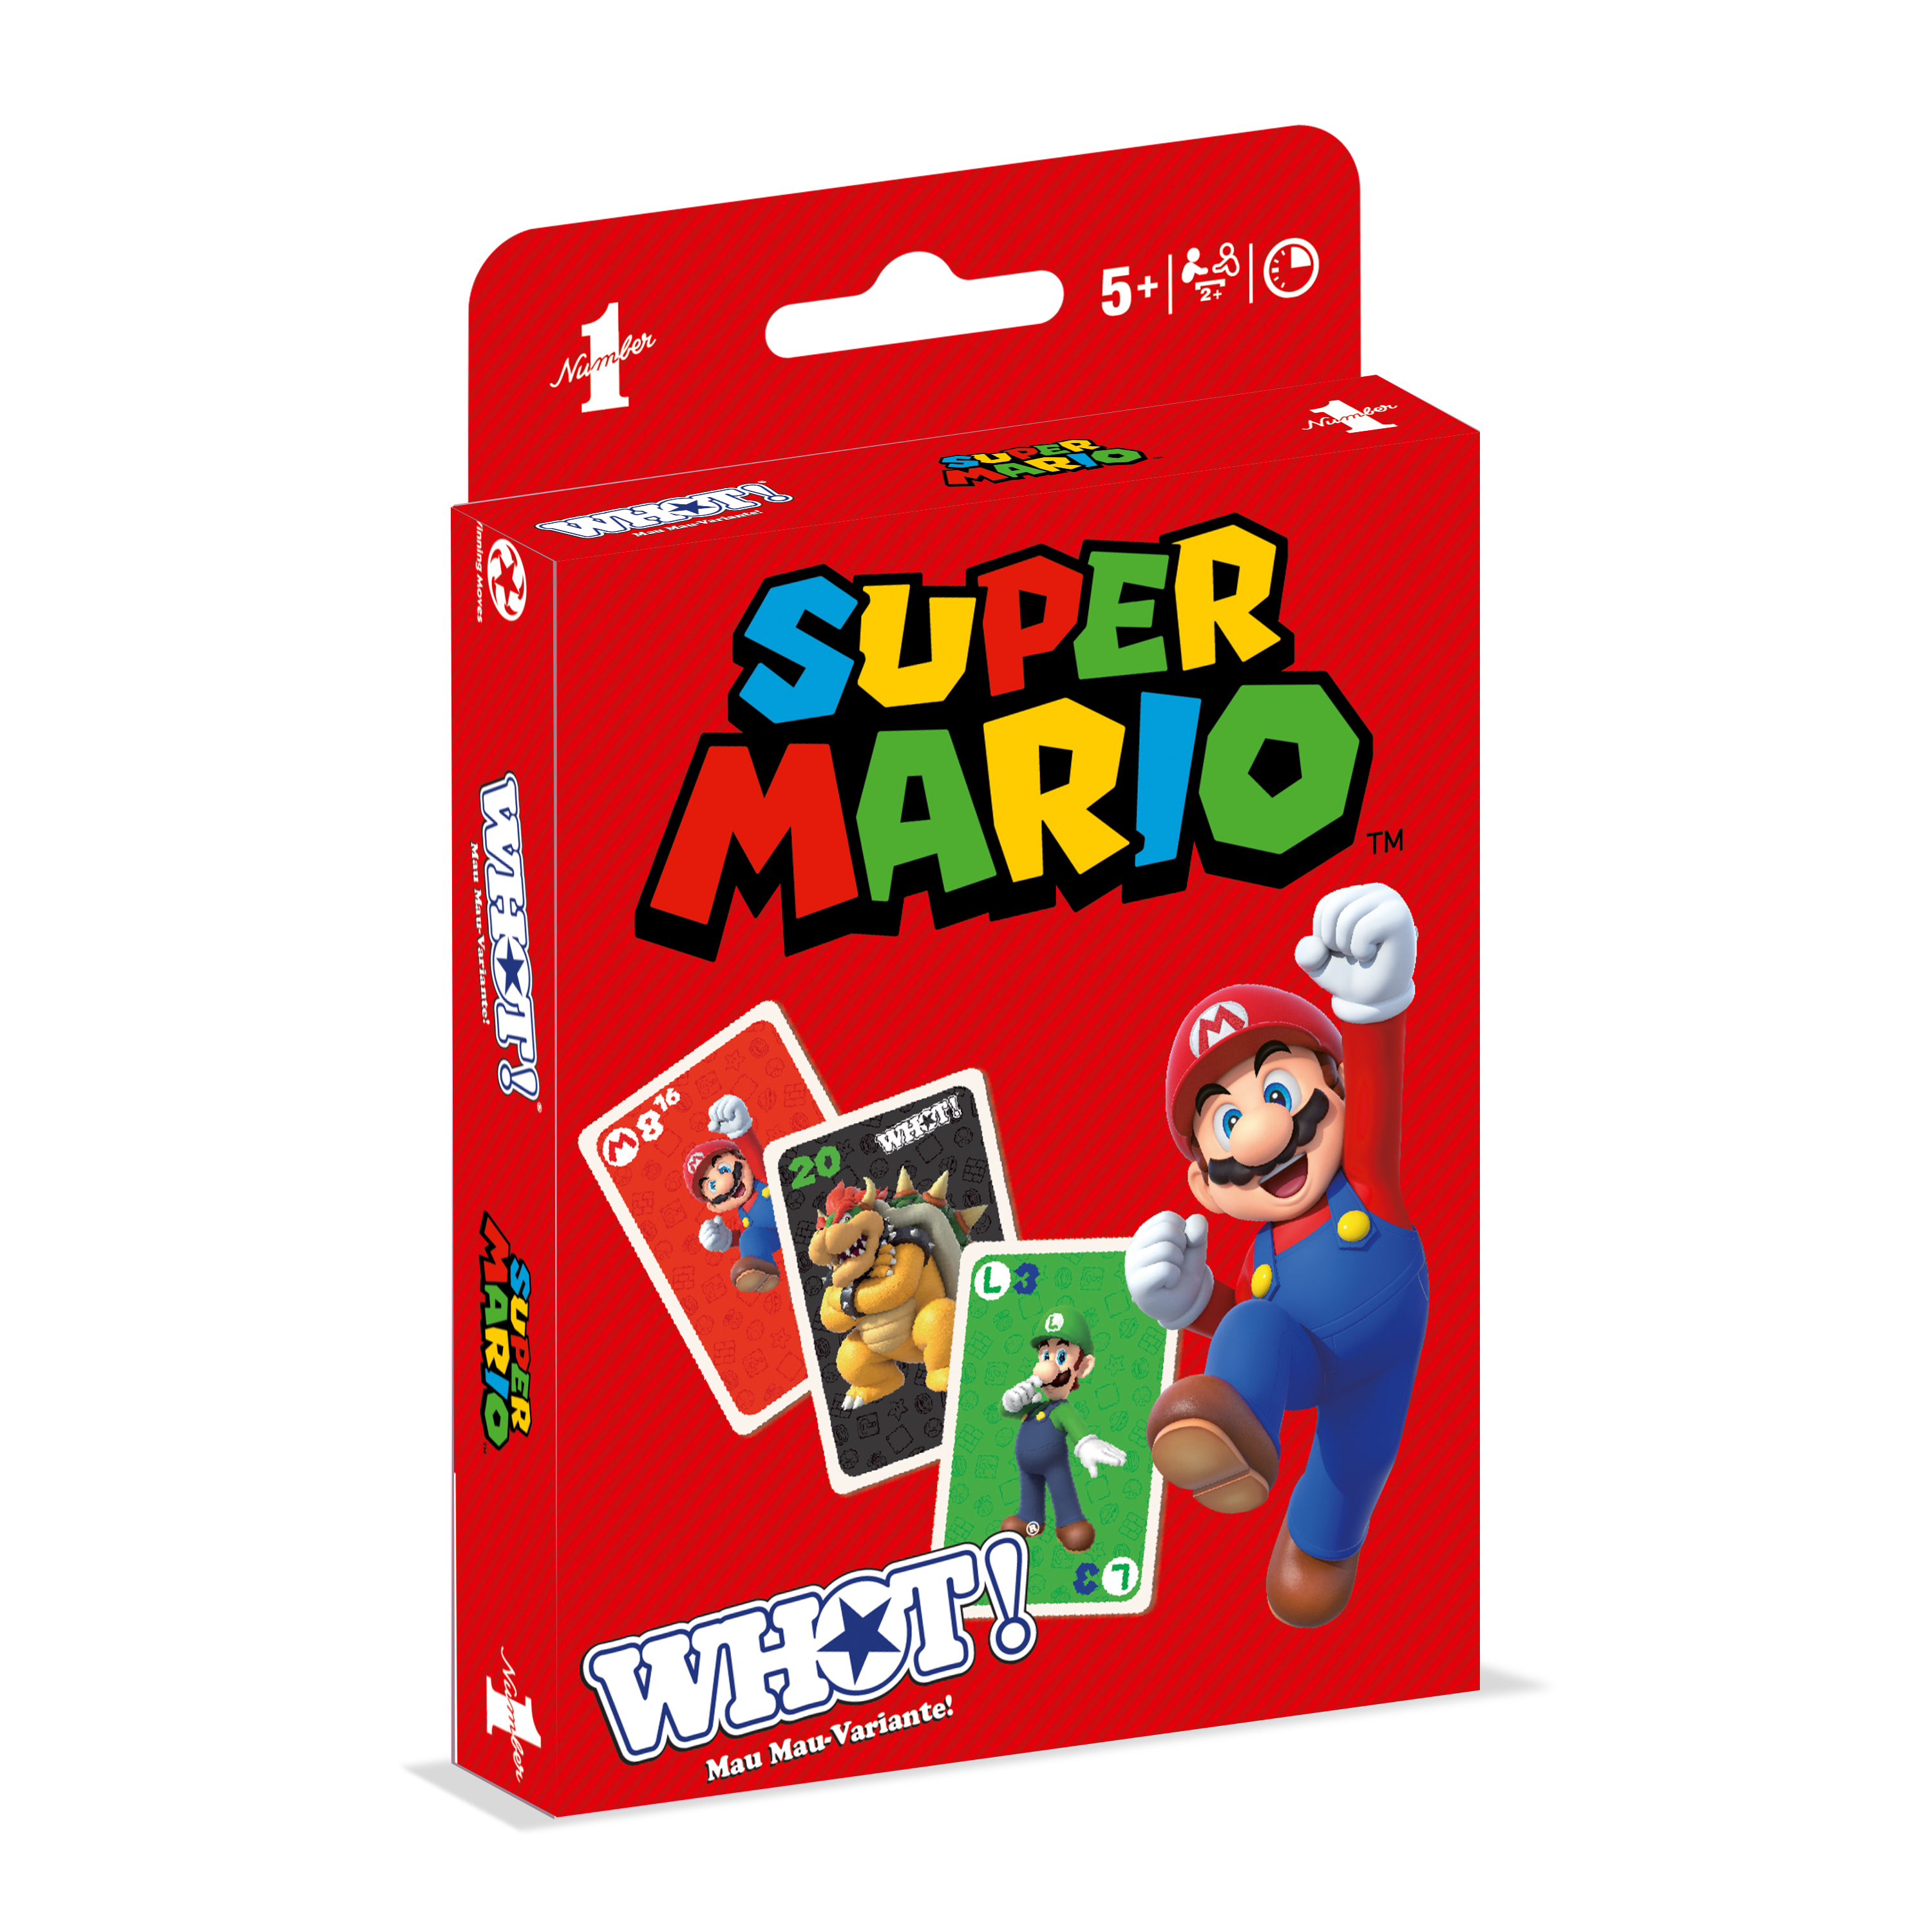 WHOT! - Super Mario